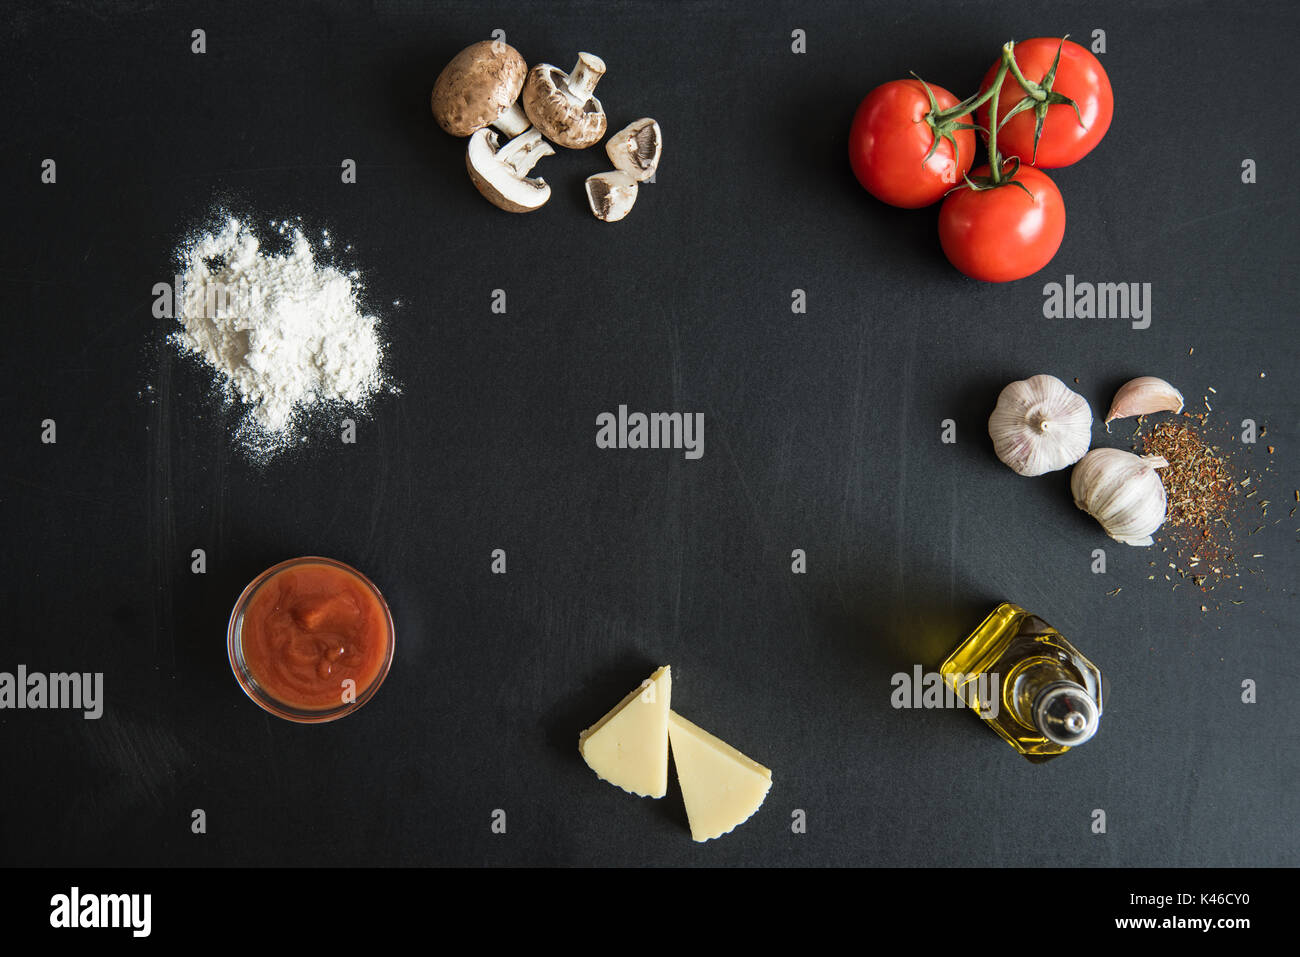 Vista superiore degli ingredienti per la preparazione di pizza italiana sulla superficie scura Foto Stock